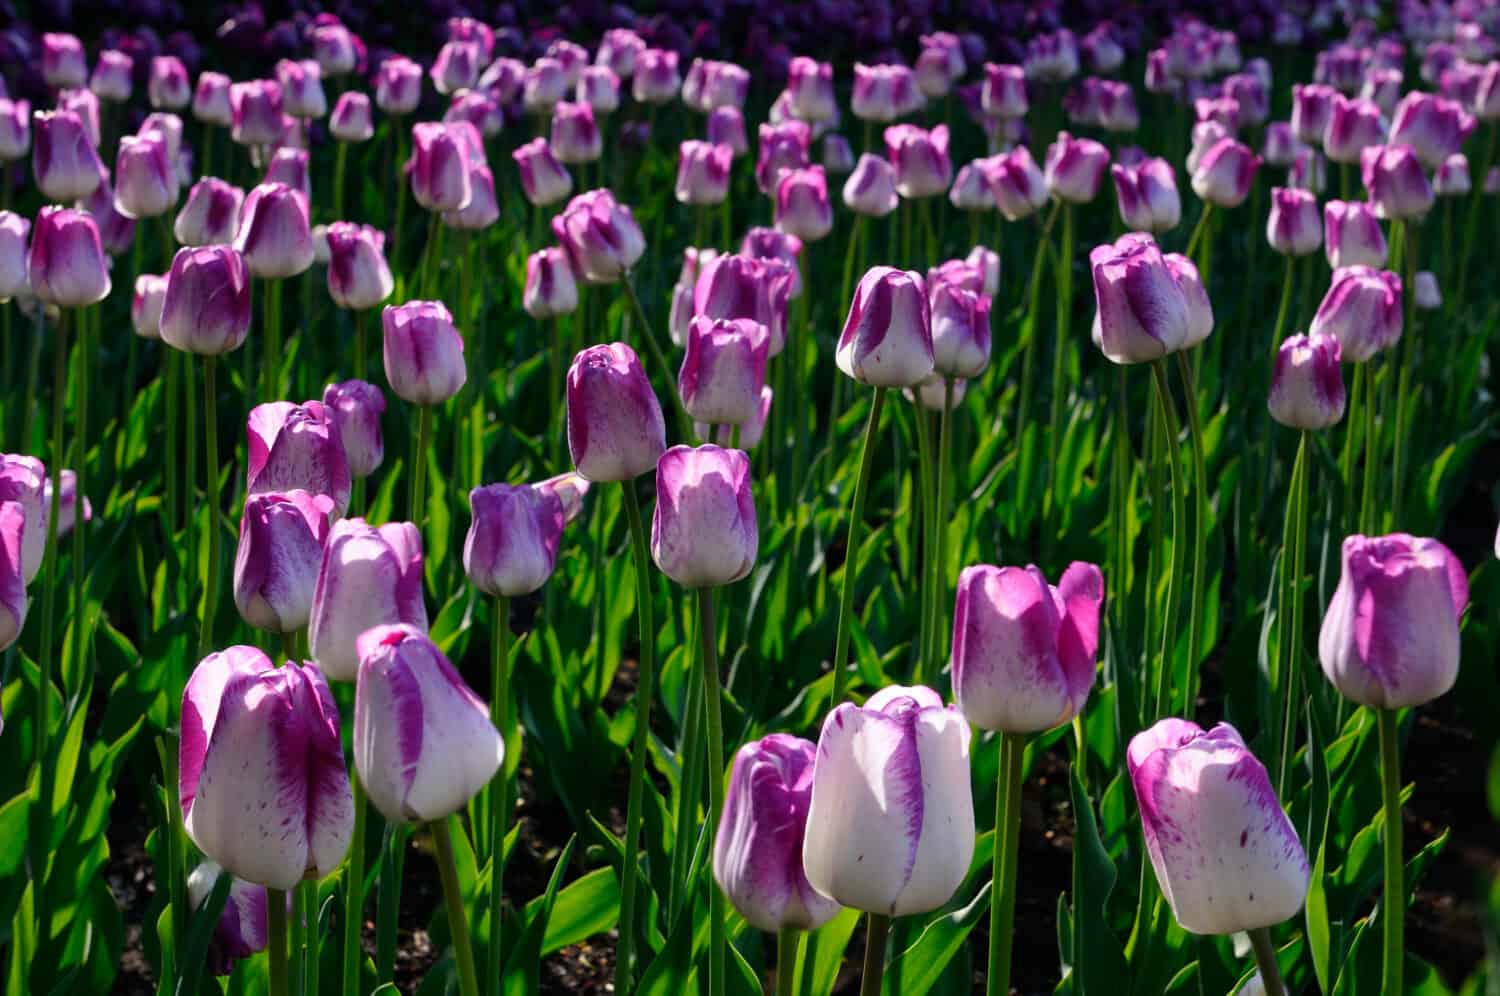 Letto di viola e bianco Shirley Tulips retroilluminato al sole del primo mattino